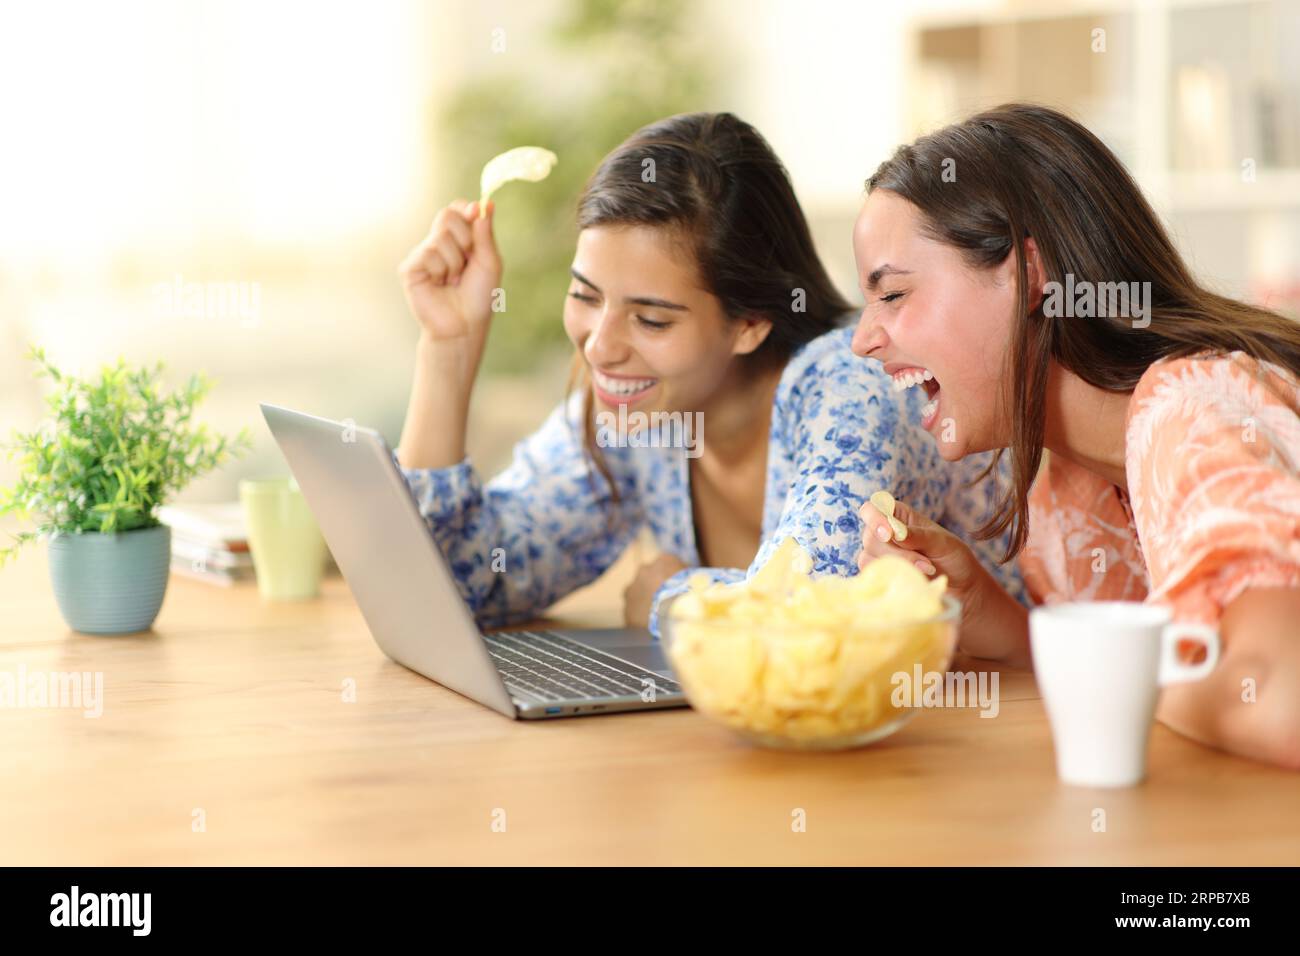 Heureux colocataires riant fort en regardant des vidéos drôles dans un ordinateur portable mangeant des chips à la maison Banque D'Images